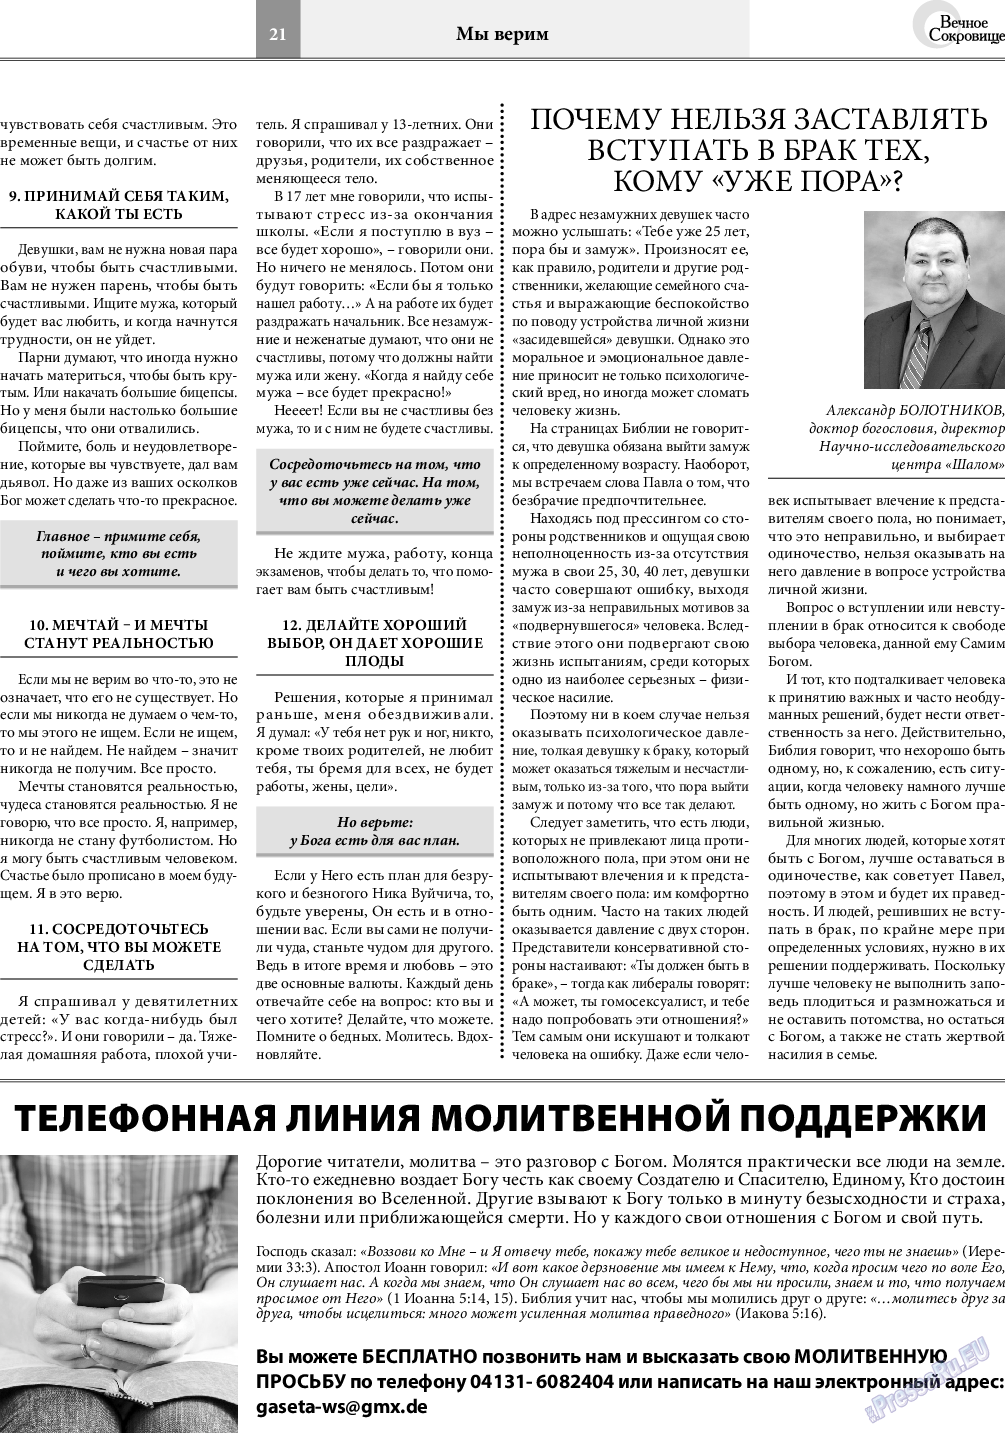 Вечное сокровище (газета). 2020 год, номер 4, стр. 21